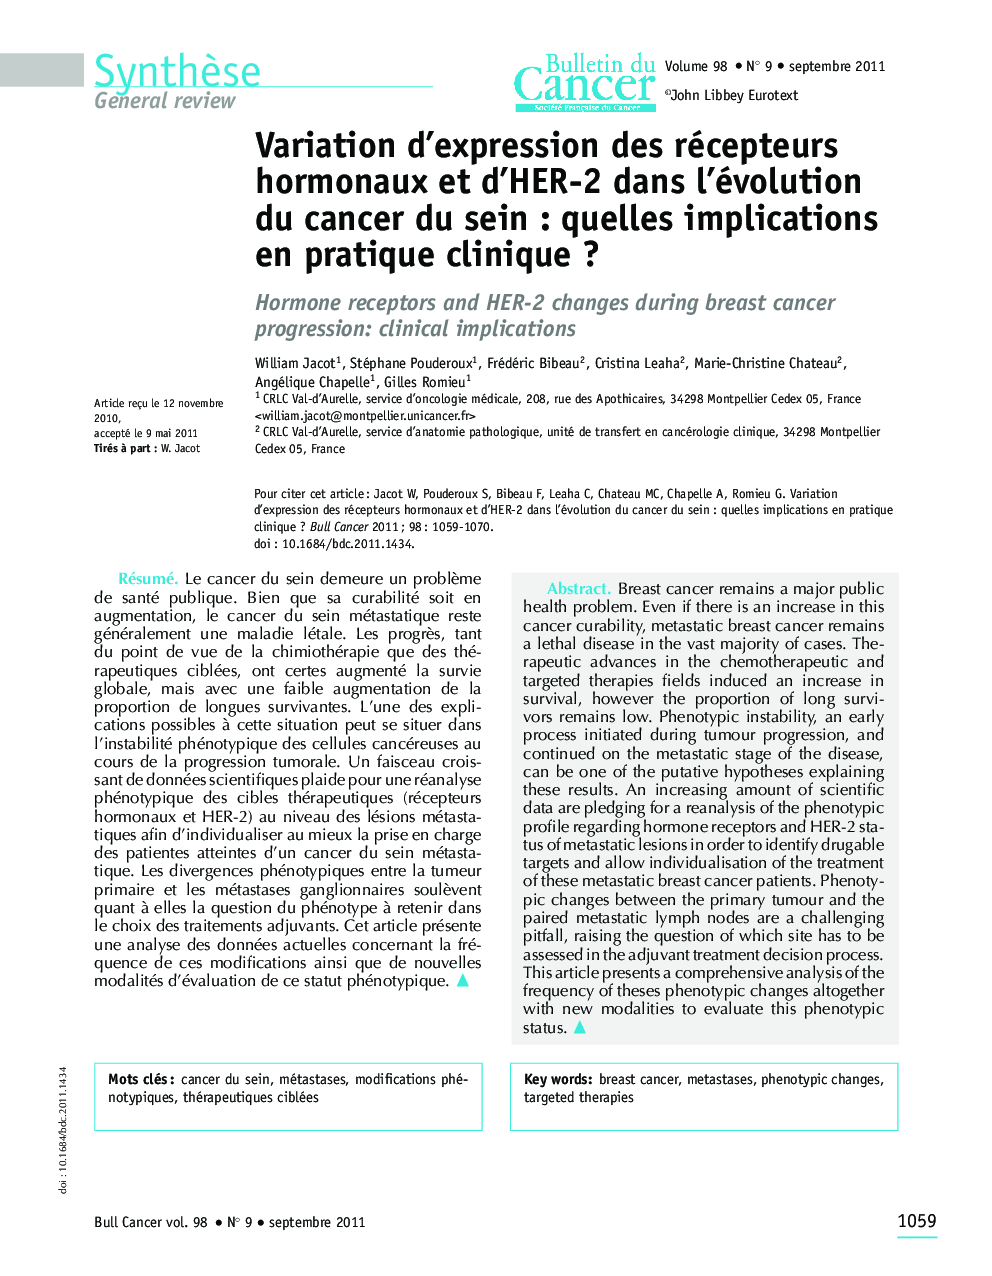 Variation d'expression des récepteurs hormonaux et d'HER-2 dans l'évolution du cancer du sein : quelles implications en pratique clinique ?